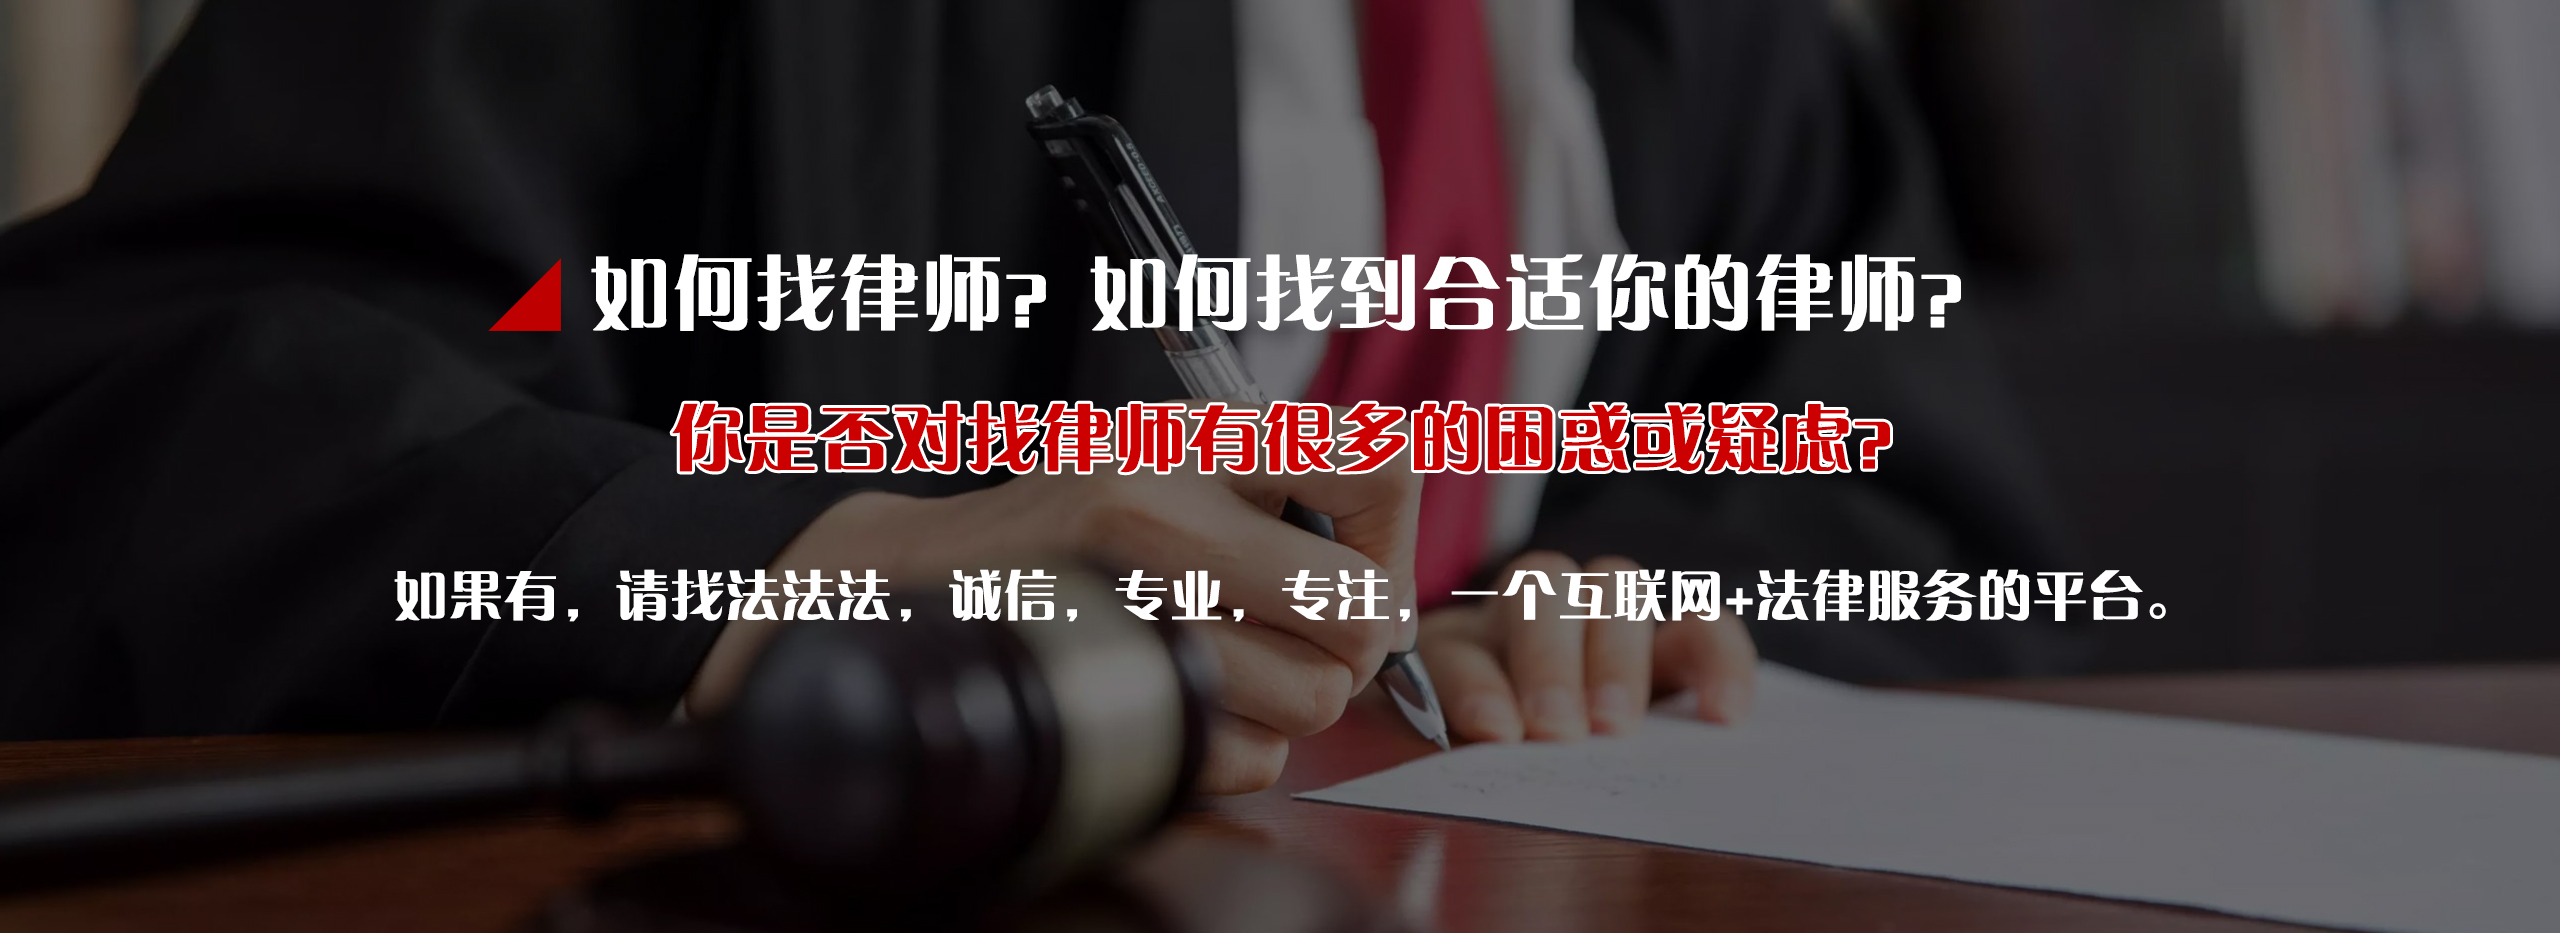 企业房产顾问_个人法律服务咨询-四川法法法信息科技有限公司